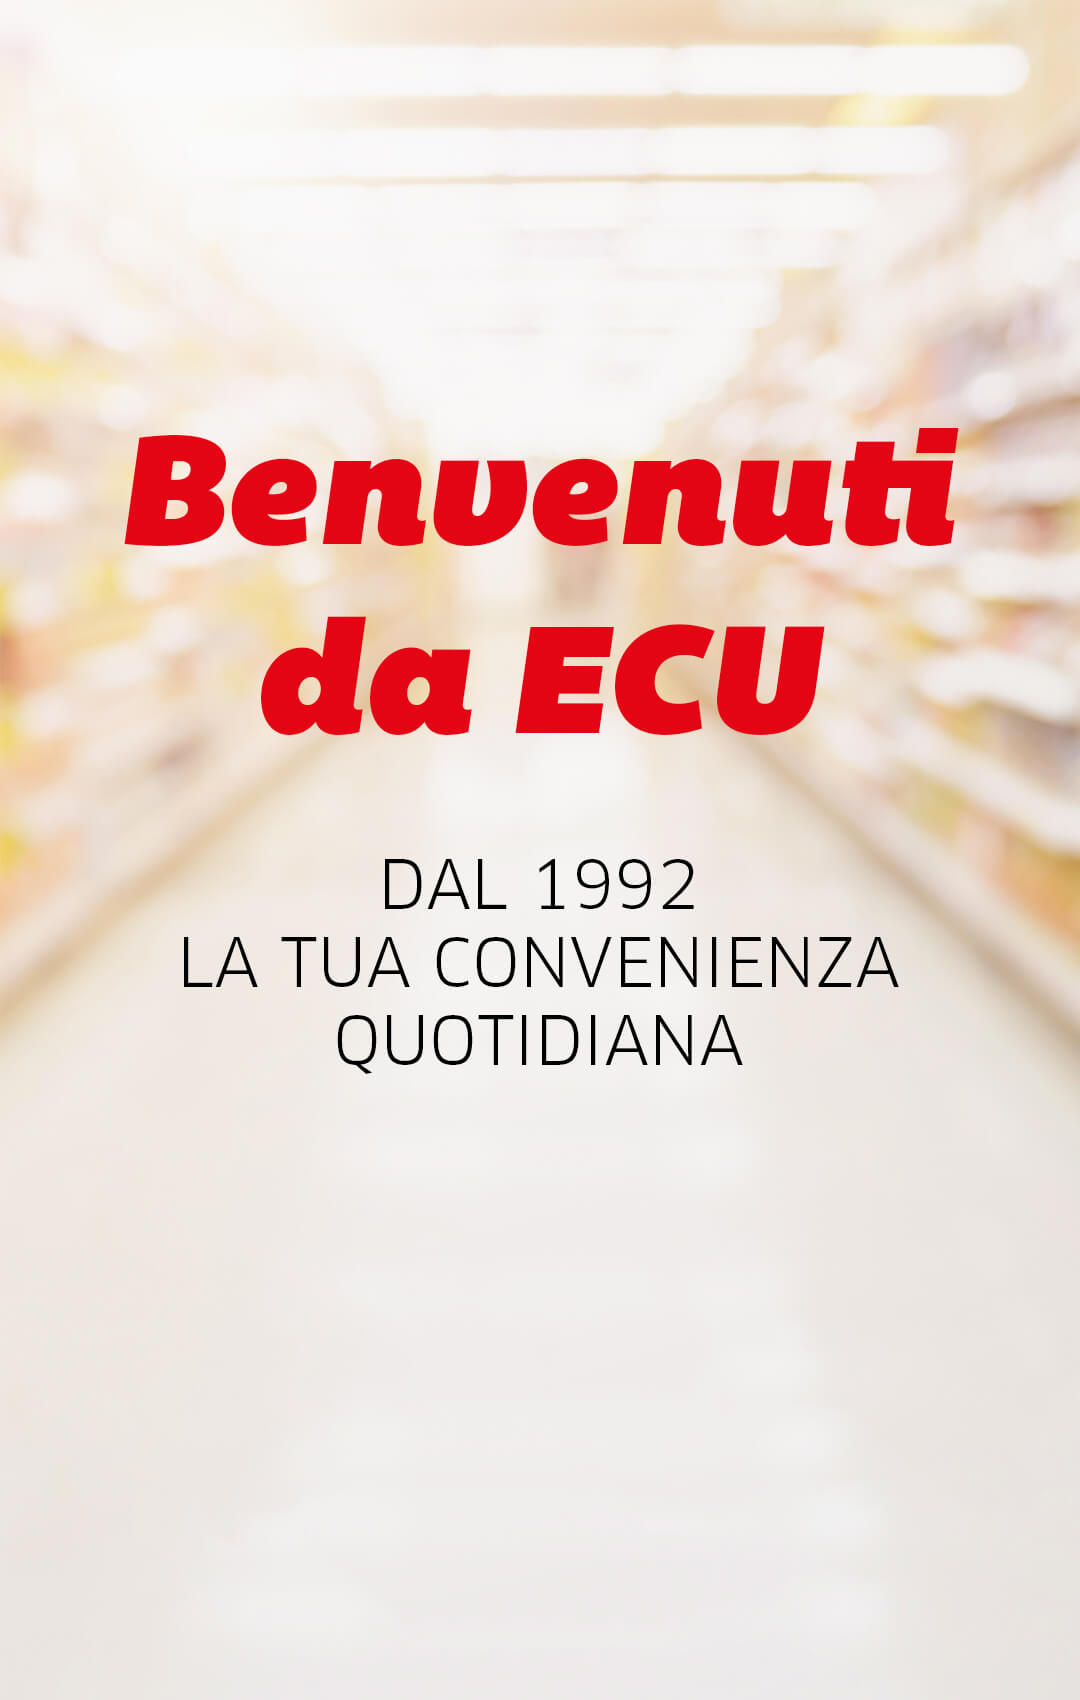 Offerte Detersivo lavatrice a Trento nel volantino di iper supermercati -  PromoQui